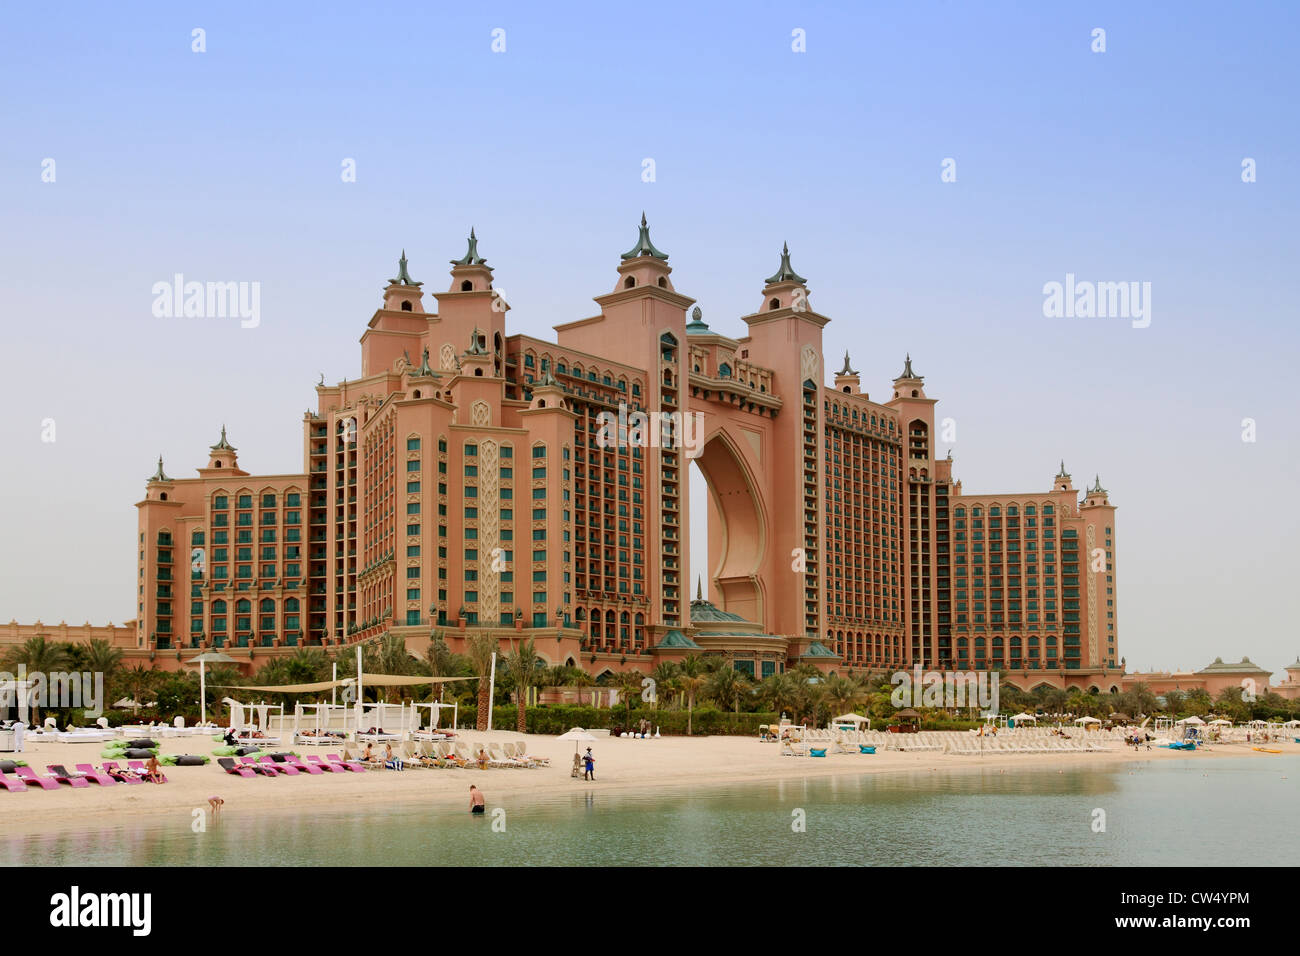 3672. H Atlantis, Palm Jumeirah, Dubai, UAE. Stock Photo